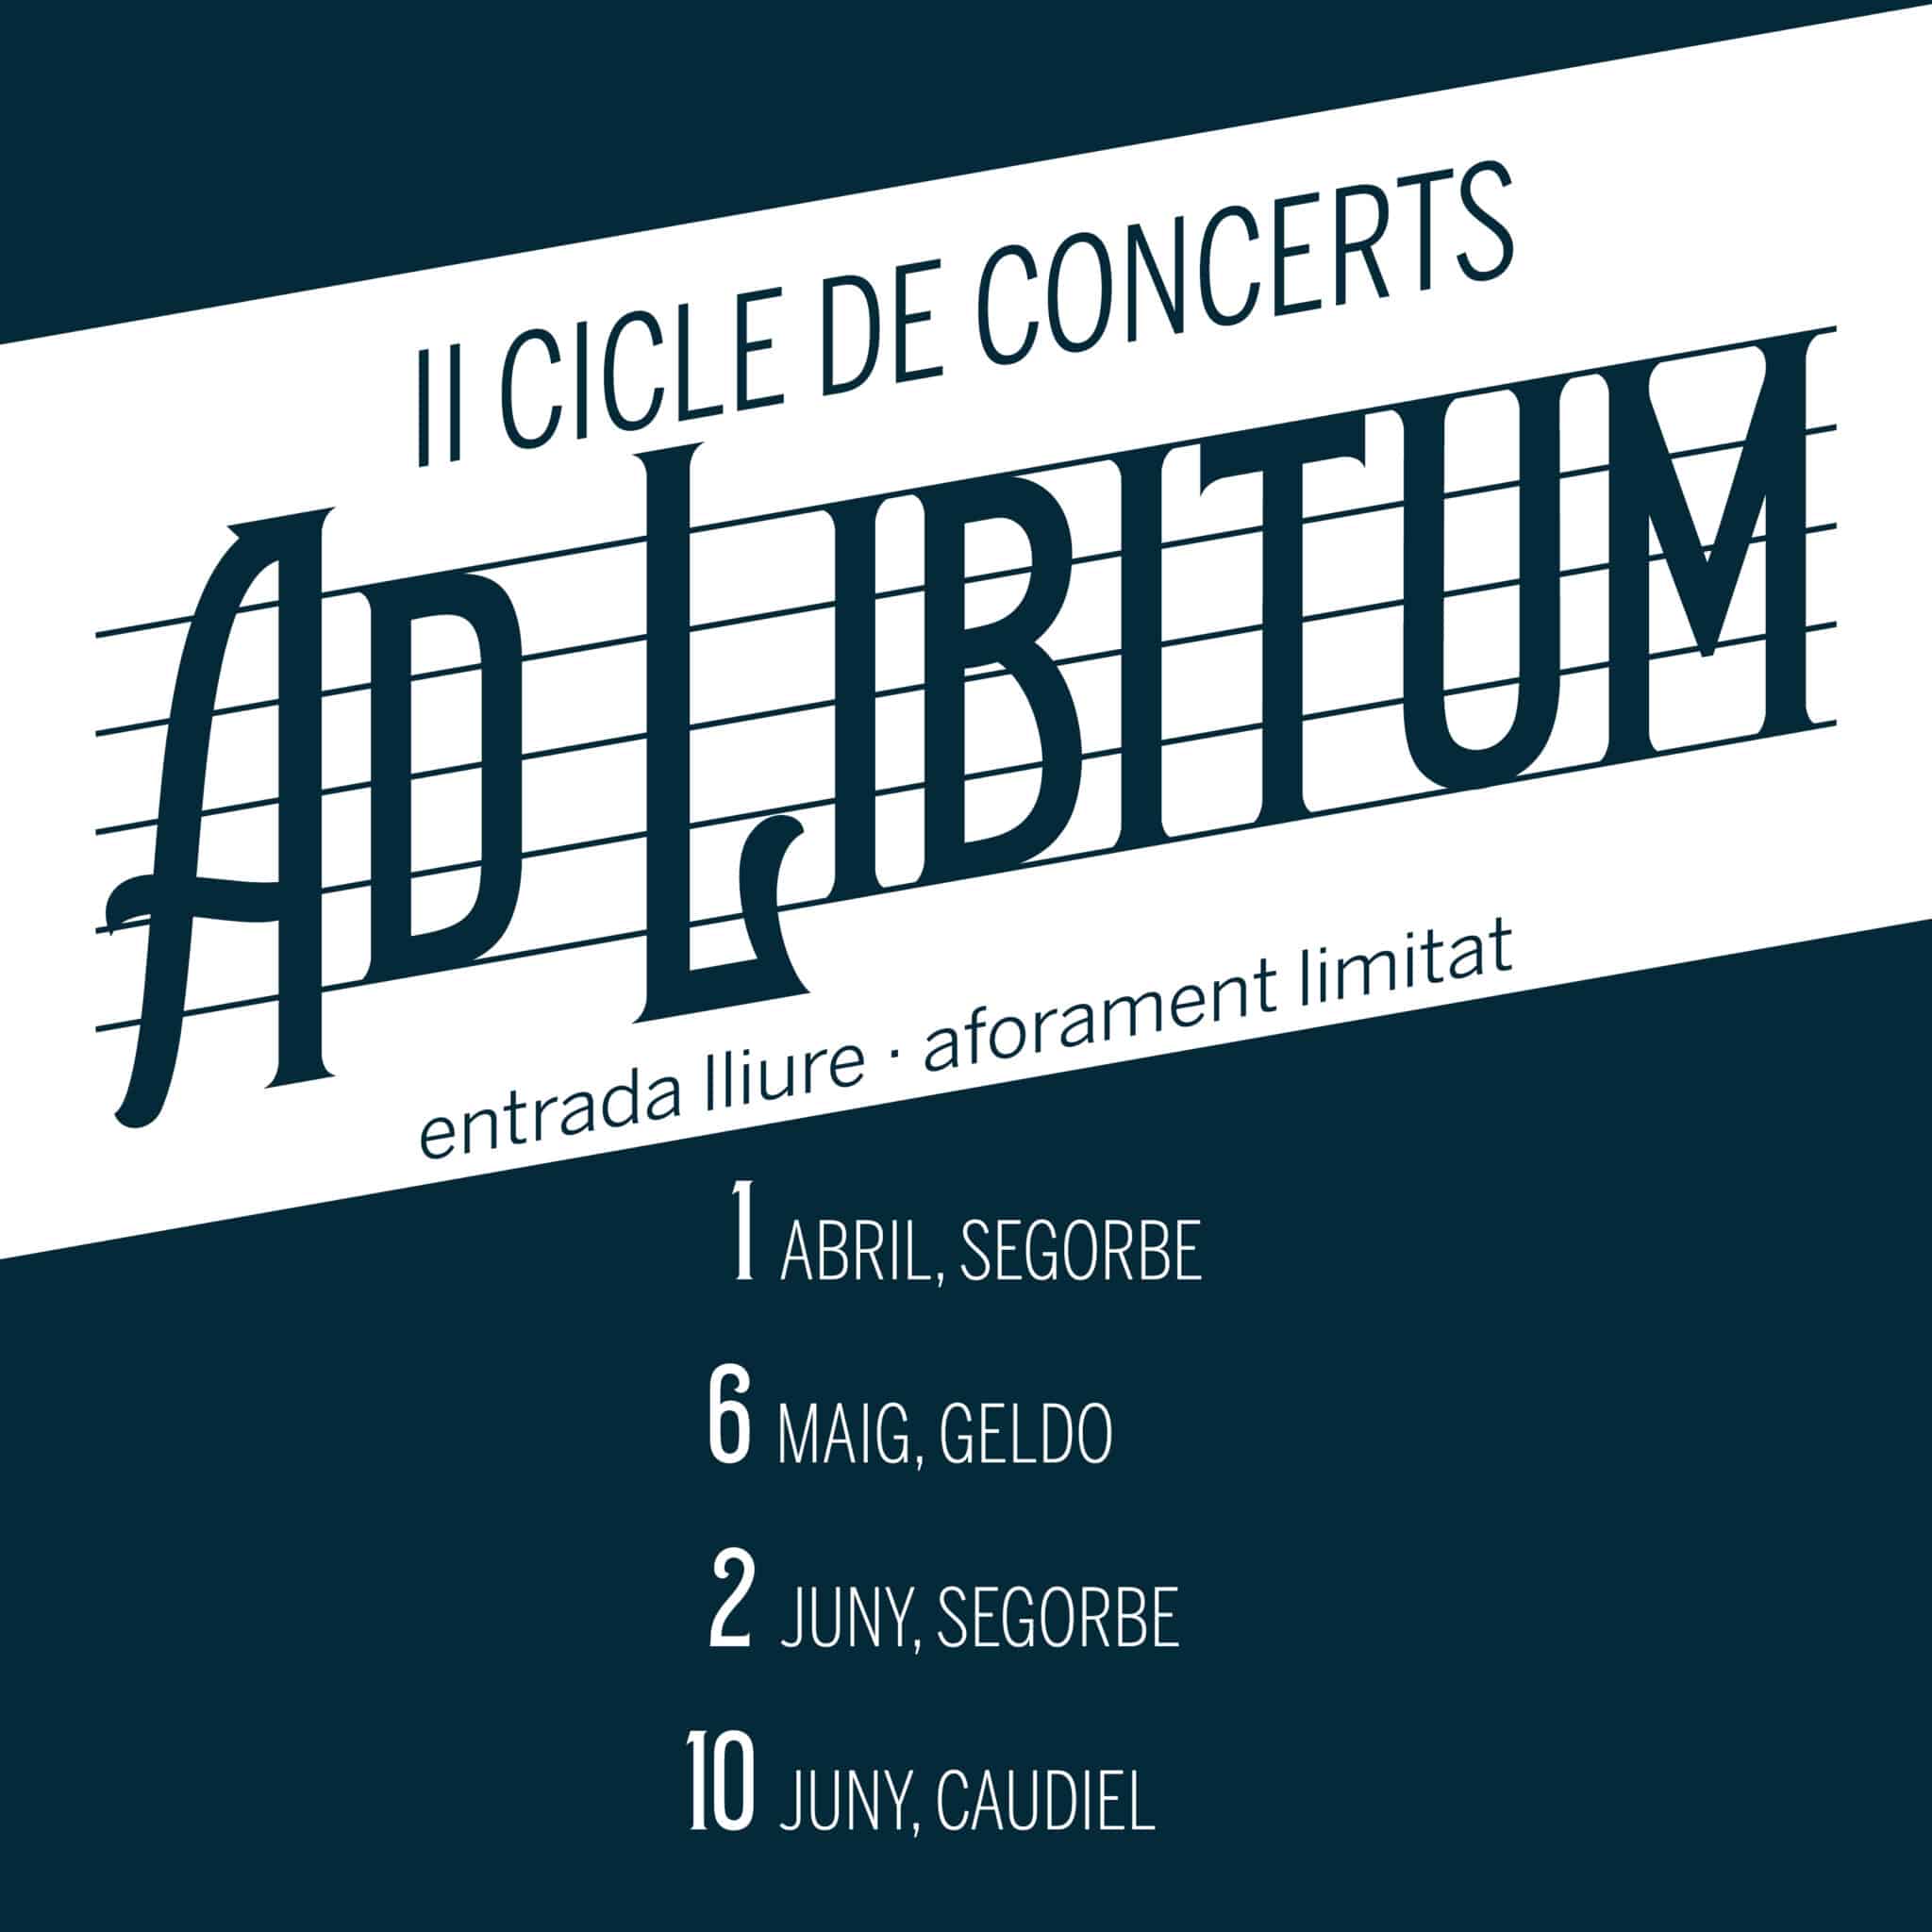 Cicle de concerts Ad libitum en directe a Segorbe, Geldo i Caudiel